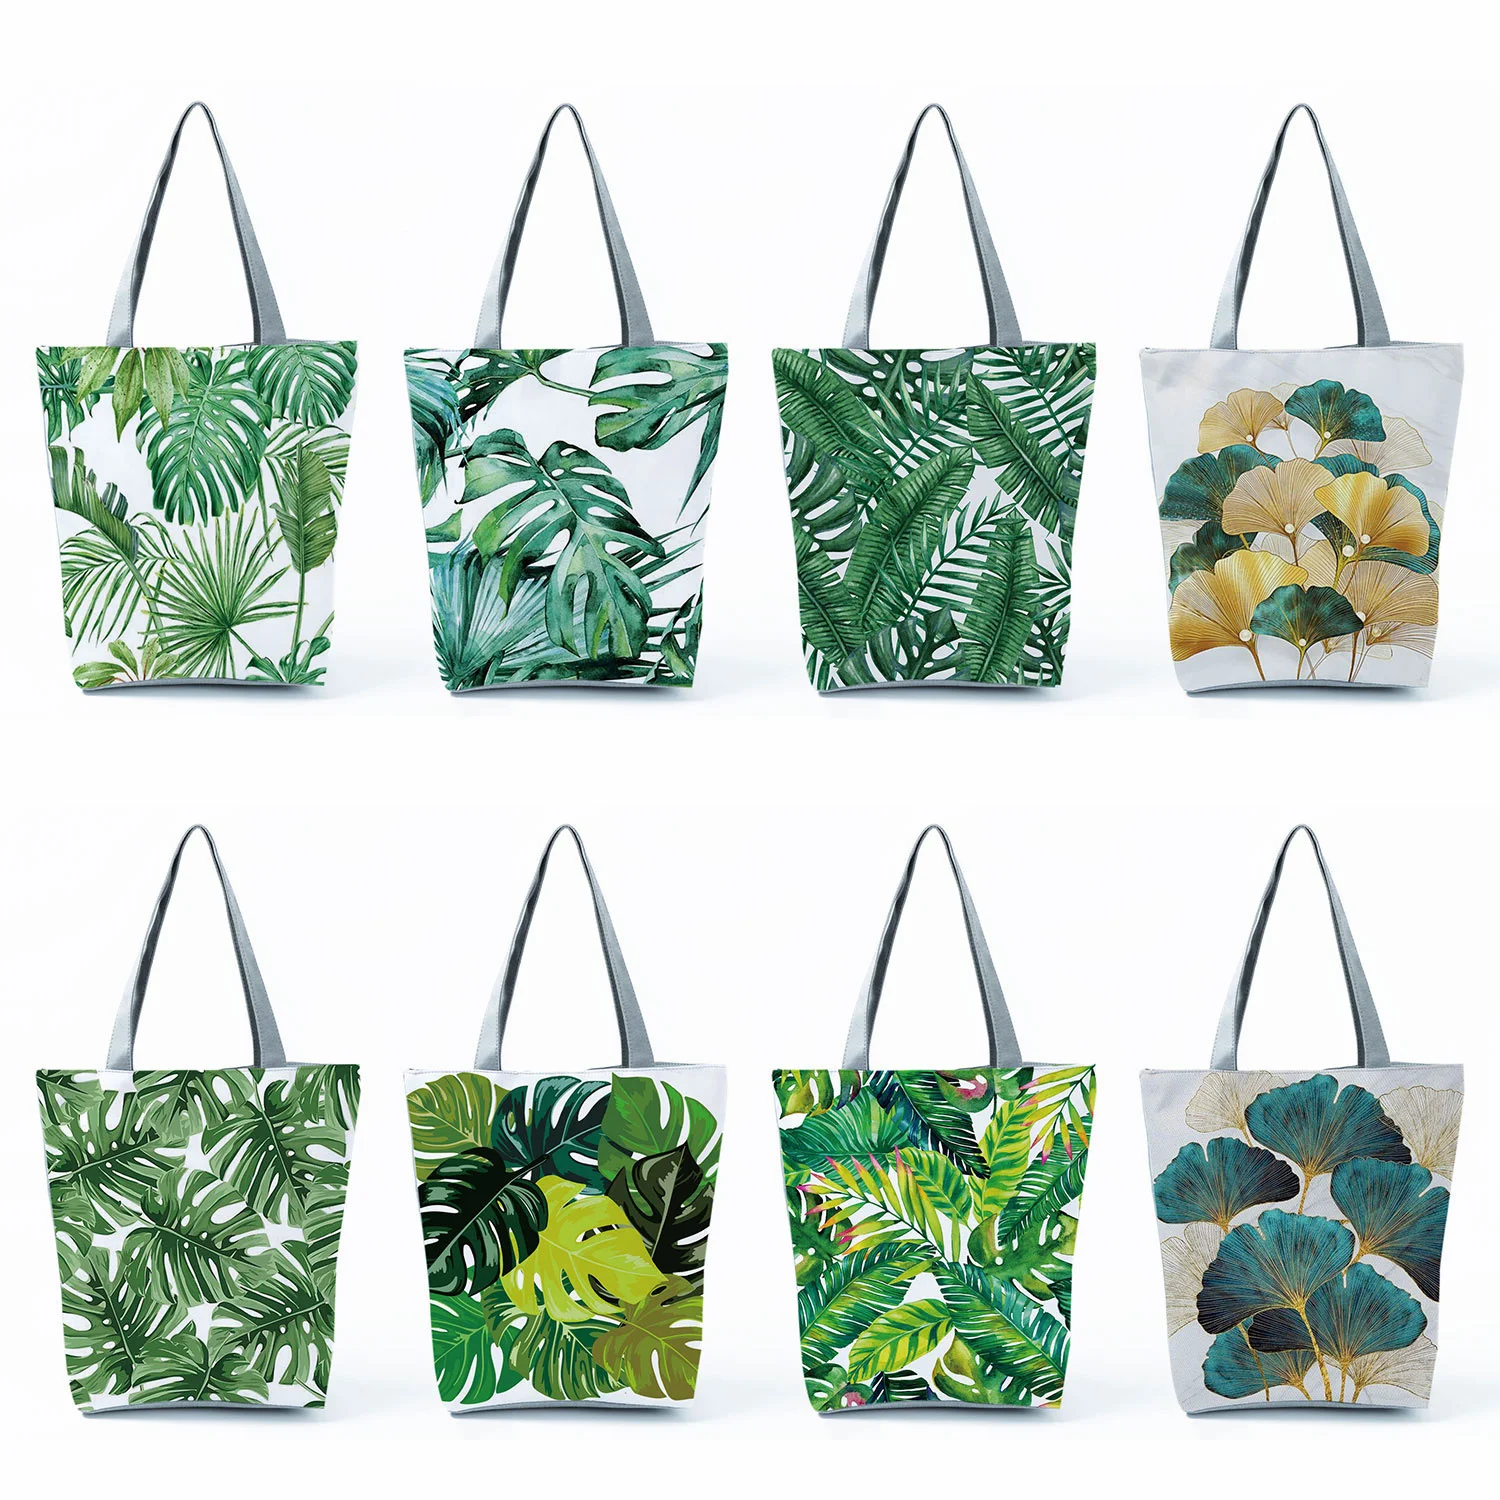 

Miyahouse женская сумка с принтом зеленых листьев, складная многоразовая пляжная сумка, Повседневная простая вместительная сумка-тоут через плечо для покупок